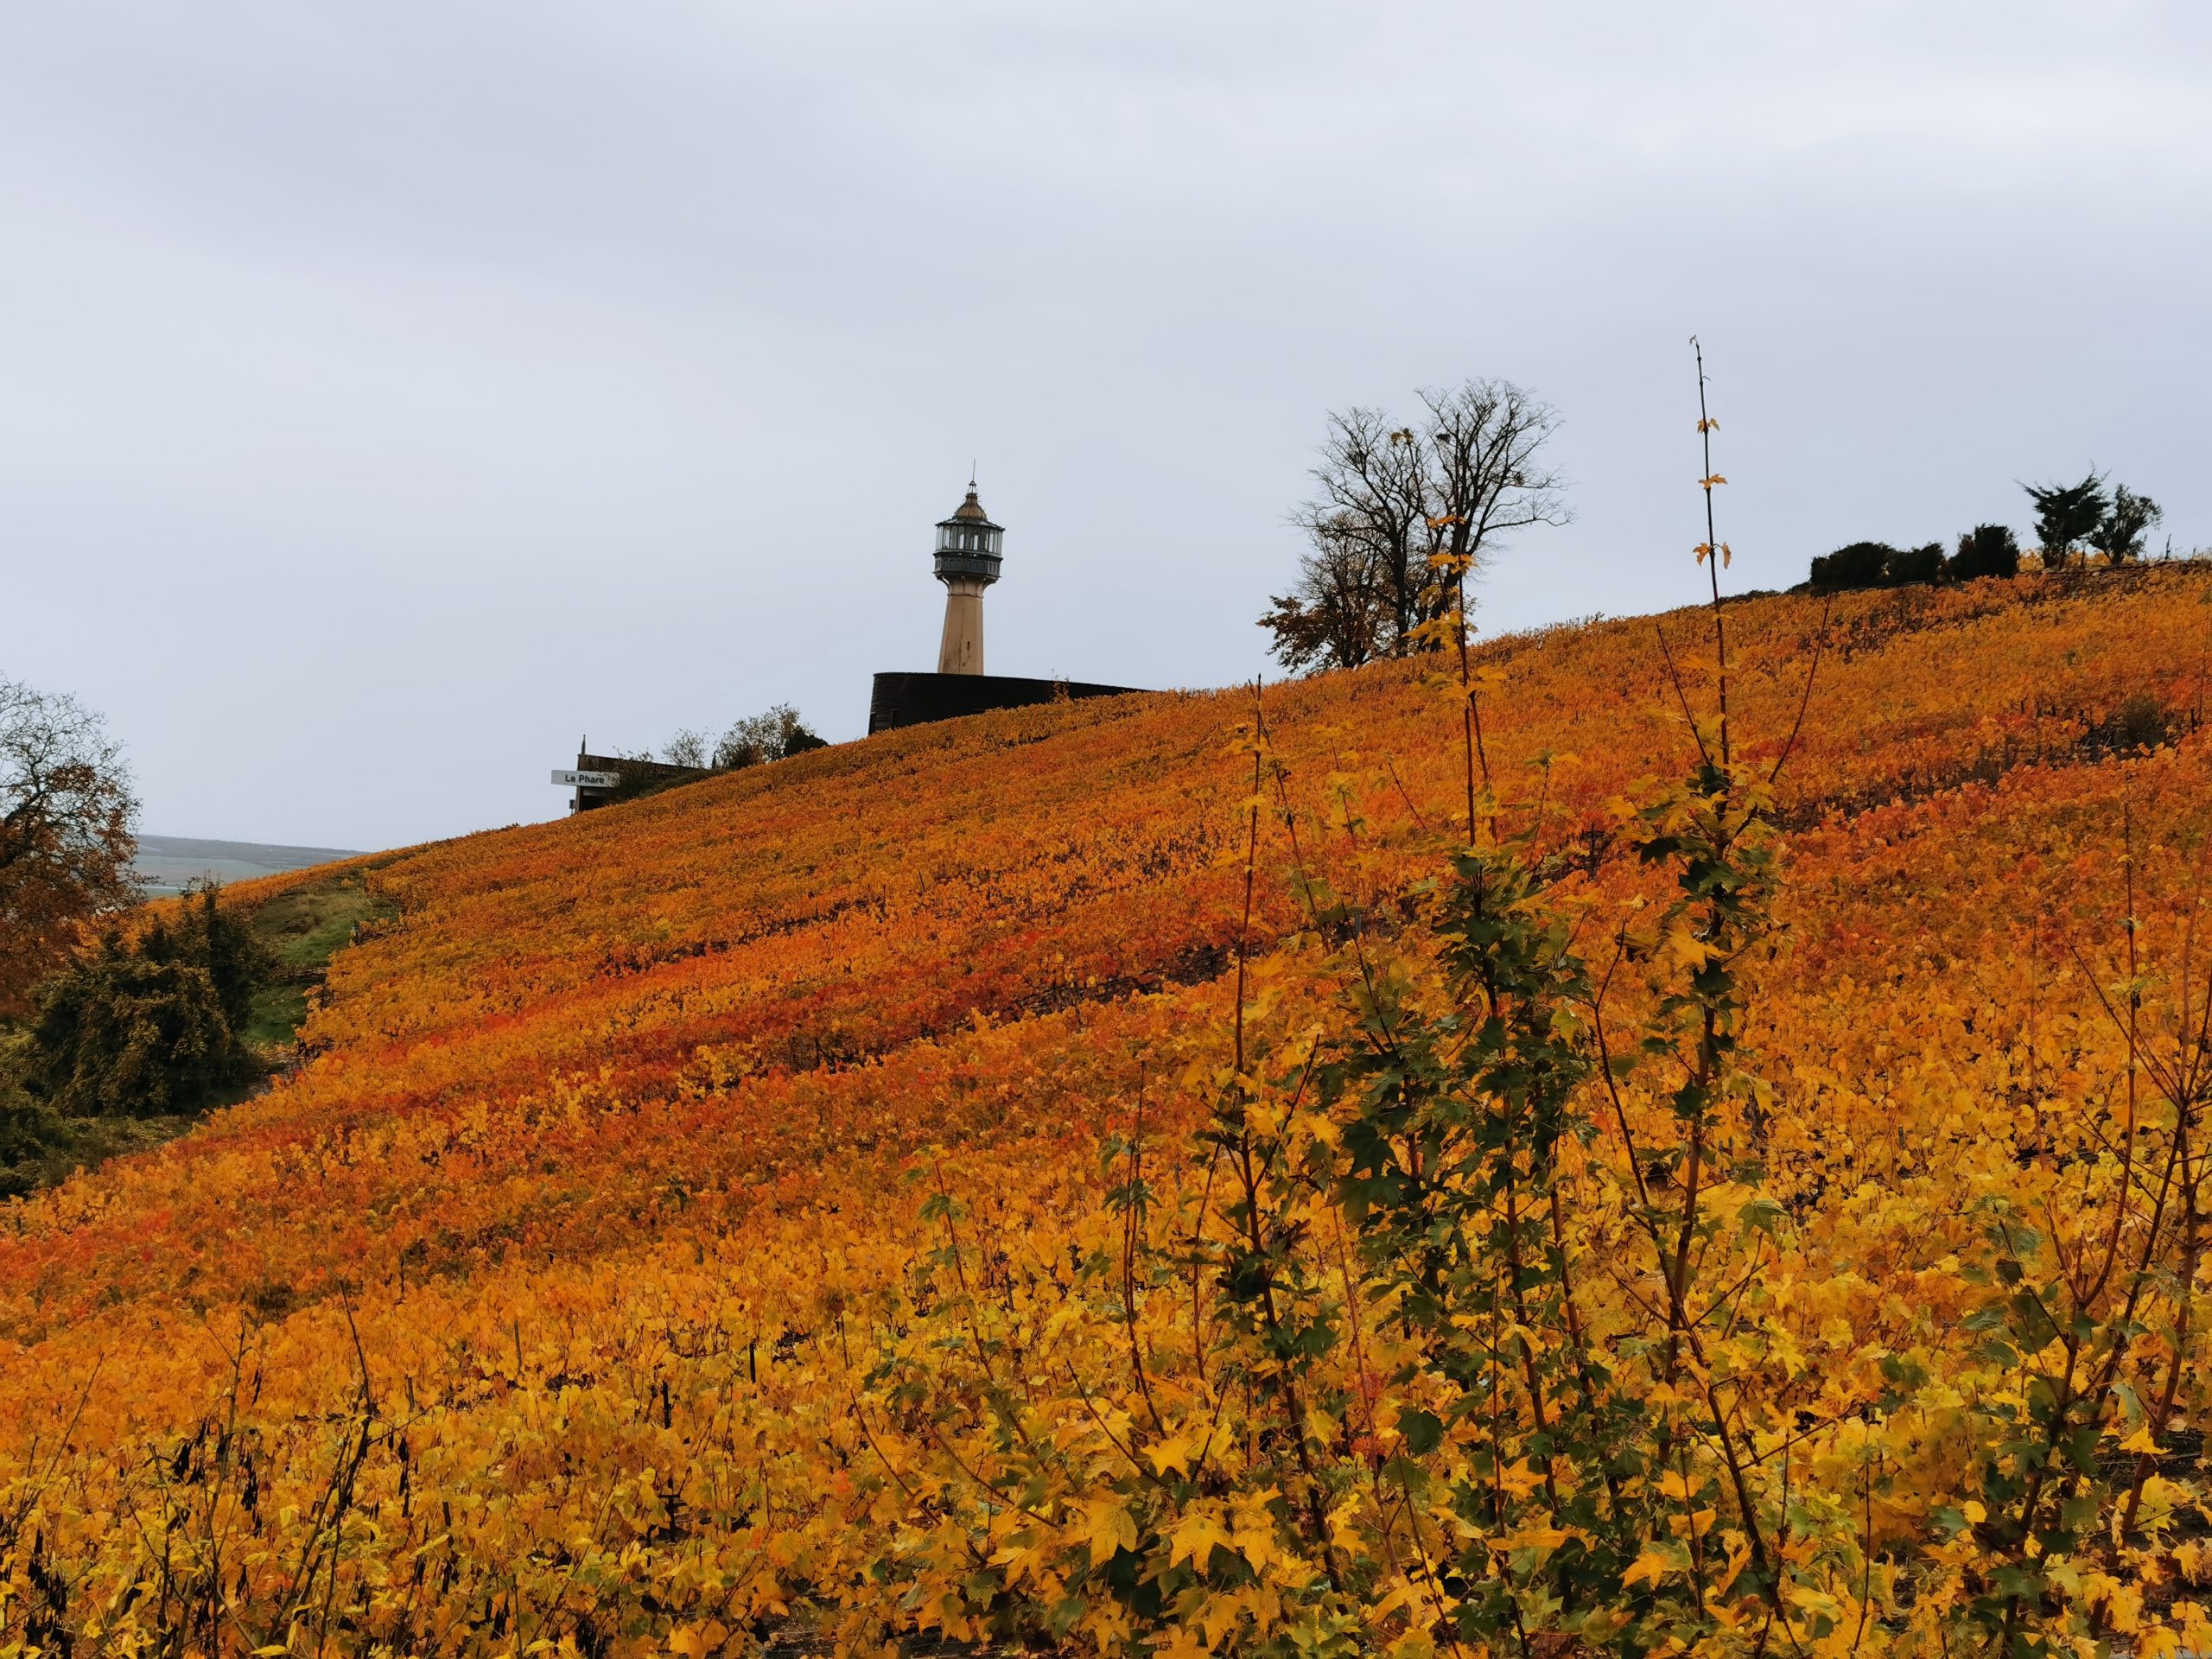 Vue sur le phare de Verzenay et les vignes environnantes aux couleurs de l'automne